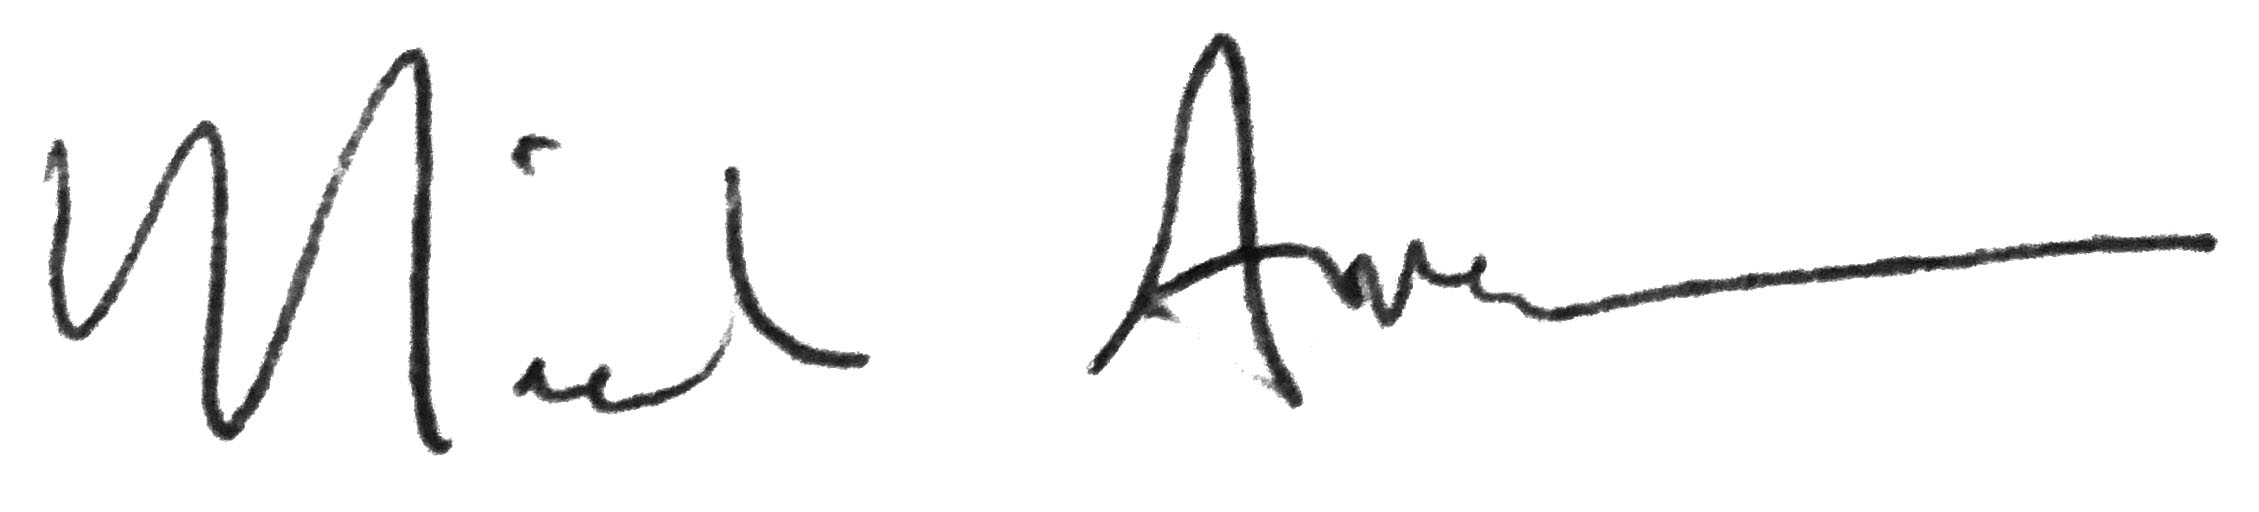 signature of Nicole Anderson